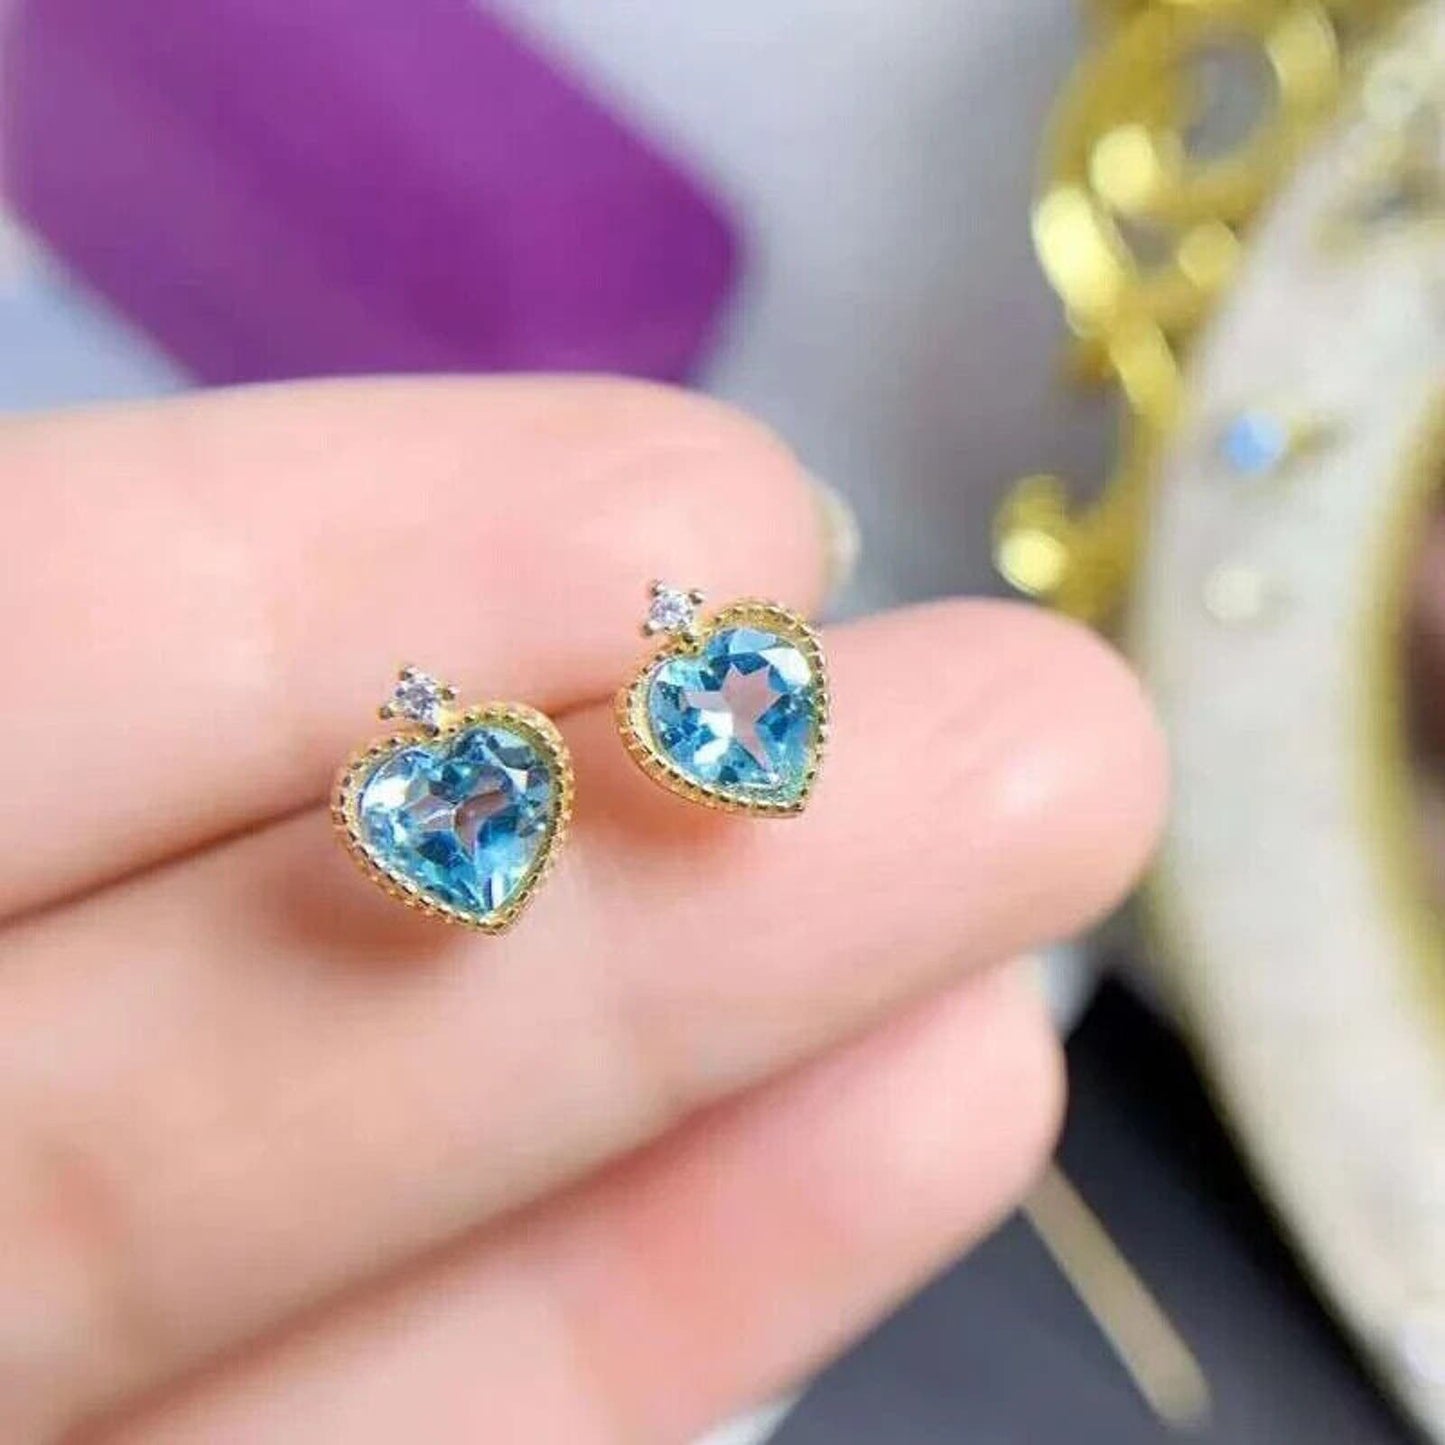 Swiss Blue Topaz Heart Shaped Stud Earrings 6mm